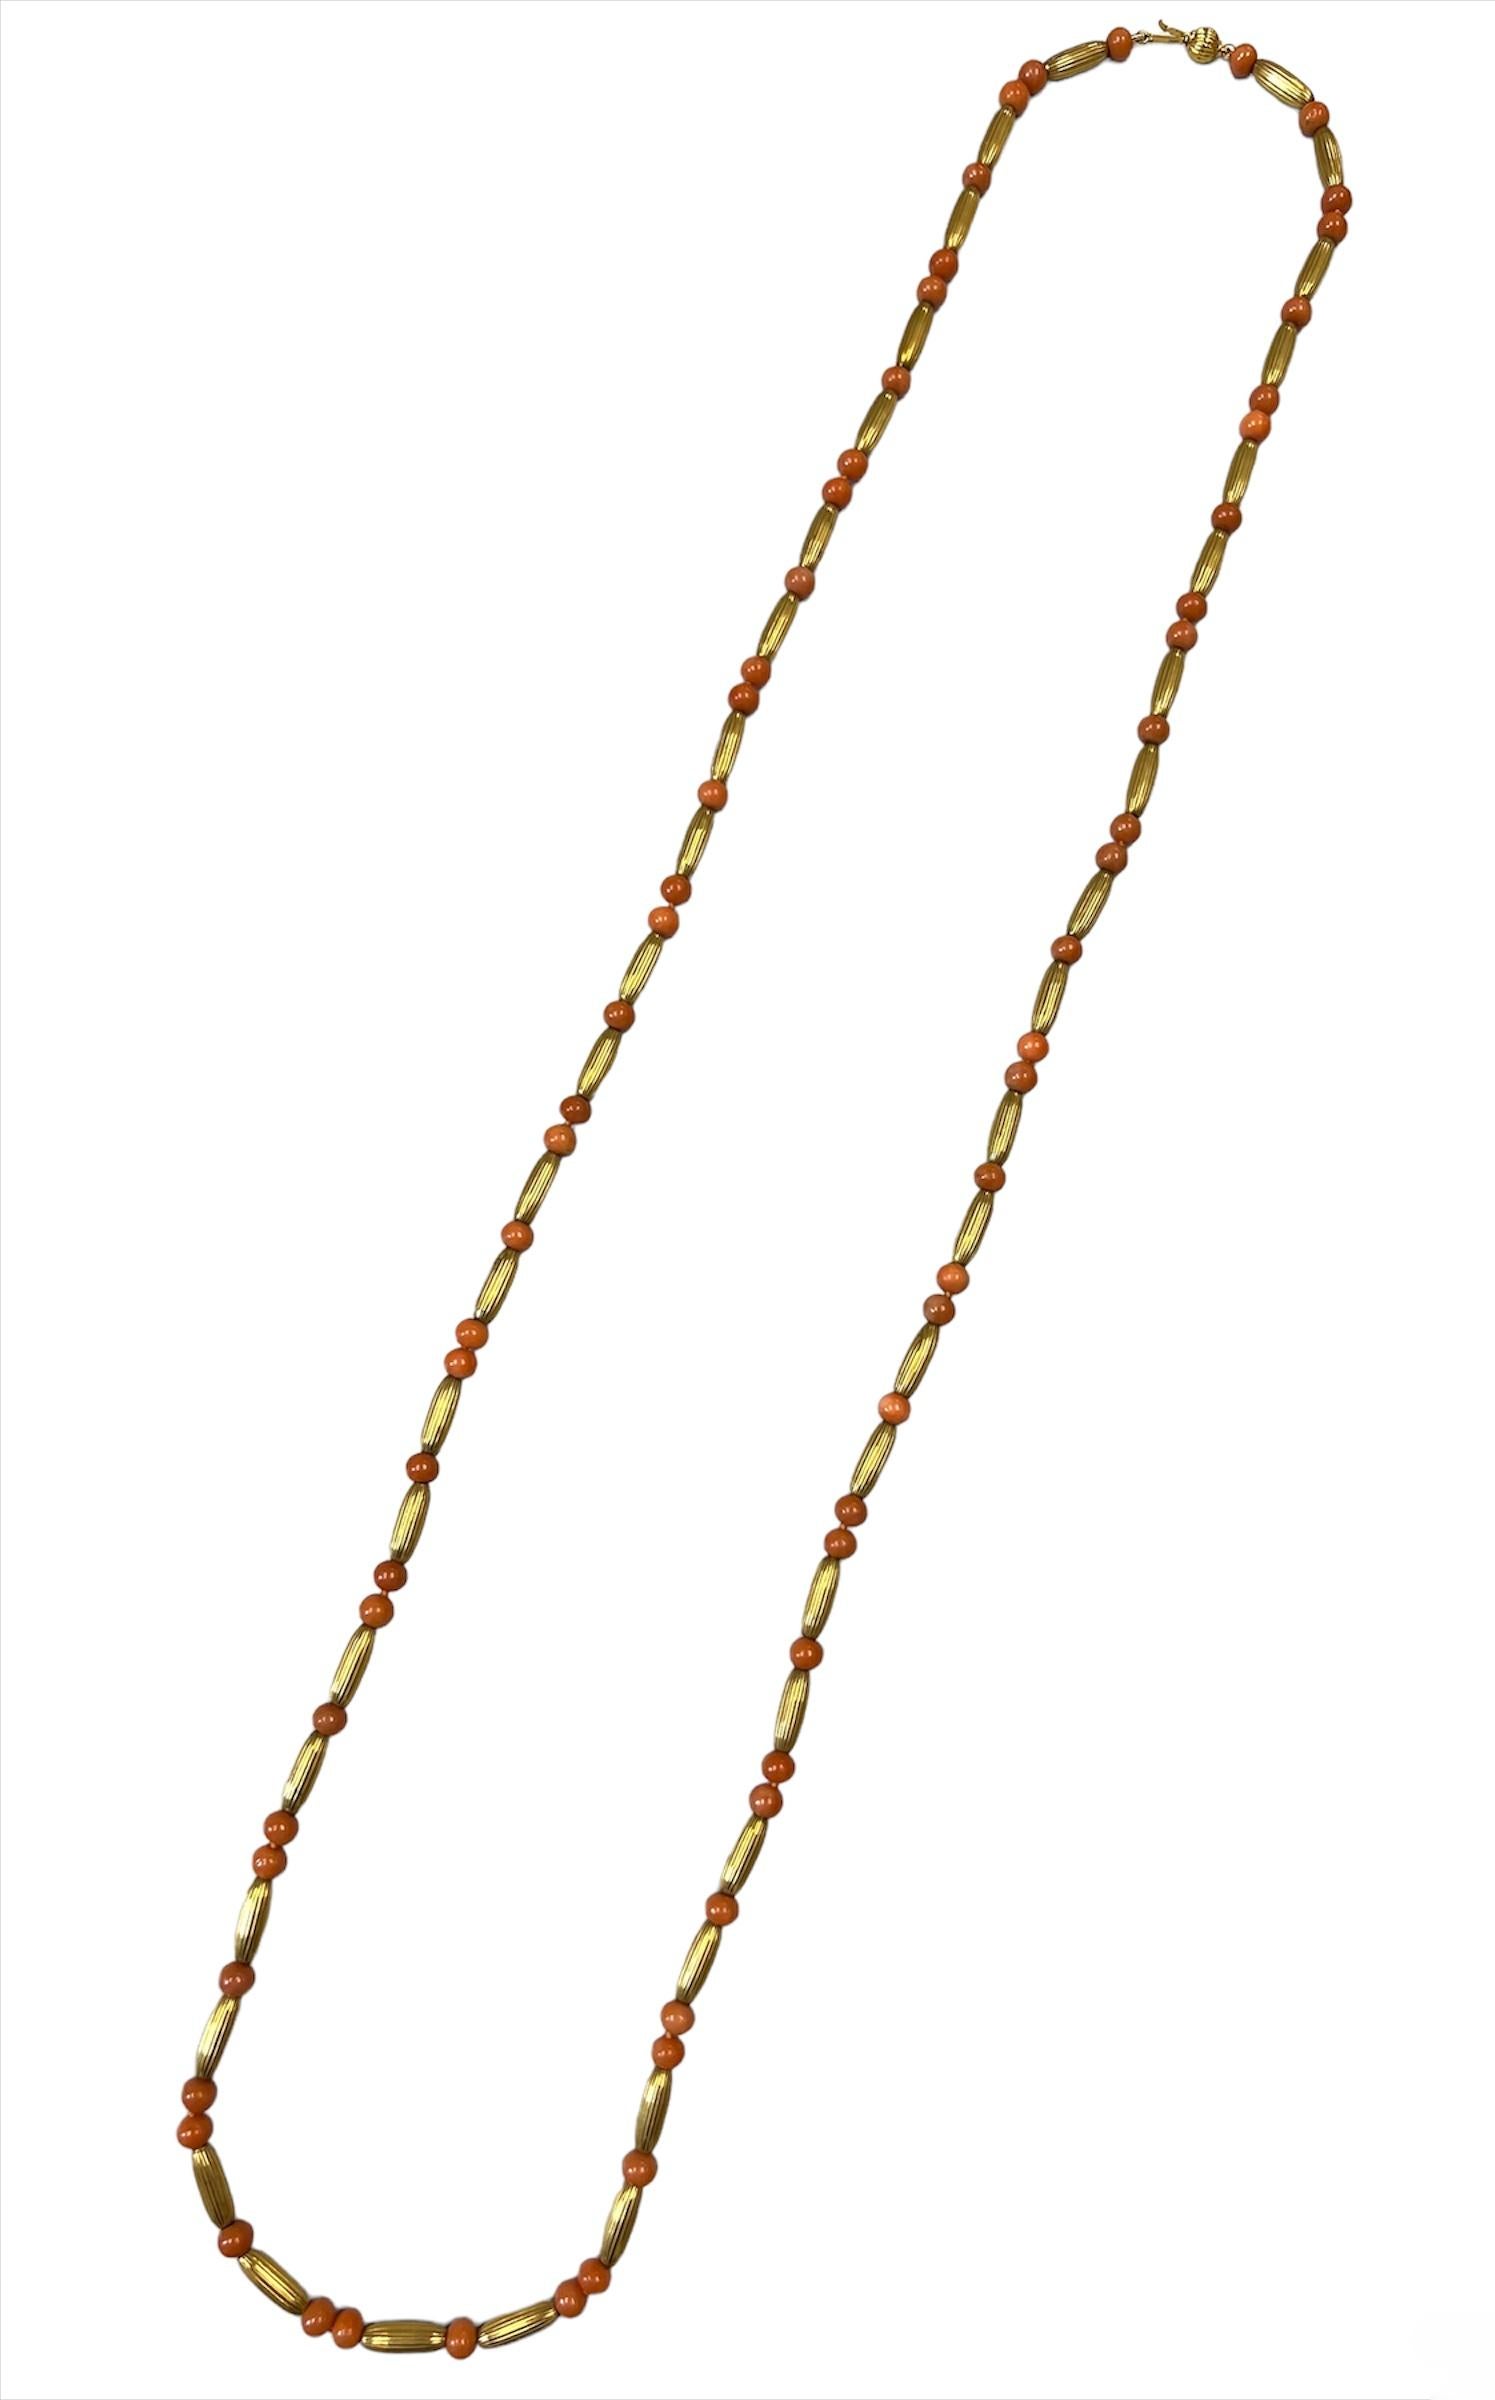 Feine Korallenkette aus 14-karätigem Gold, ca. 1970er Jahre.

Die Halskette besteht aus Korallenperlen und ovalen Gliedern aus strukturiertem Gold.

Die Koralle hat eine zarte lachsrosa Farbe, die gut mit dem zarten Goldton harmoniert.

Diese